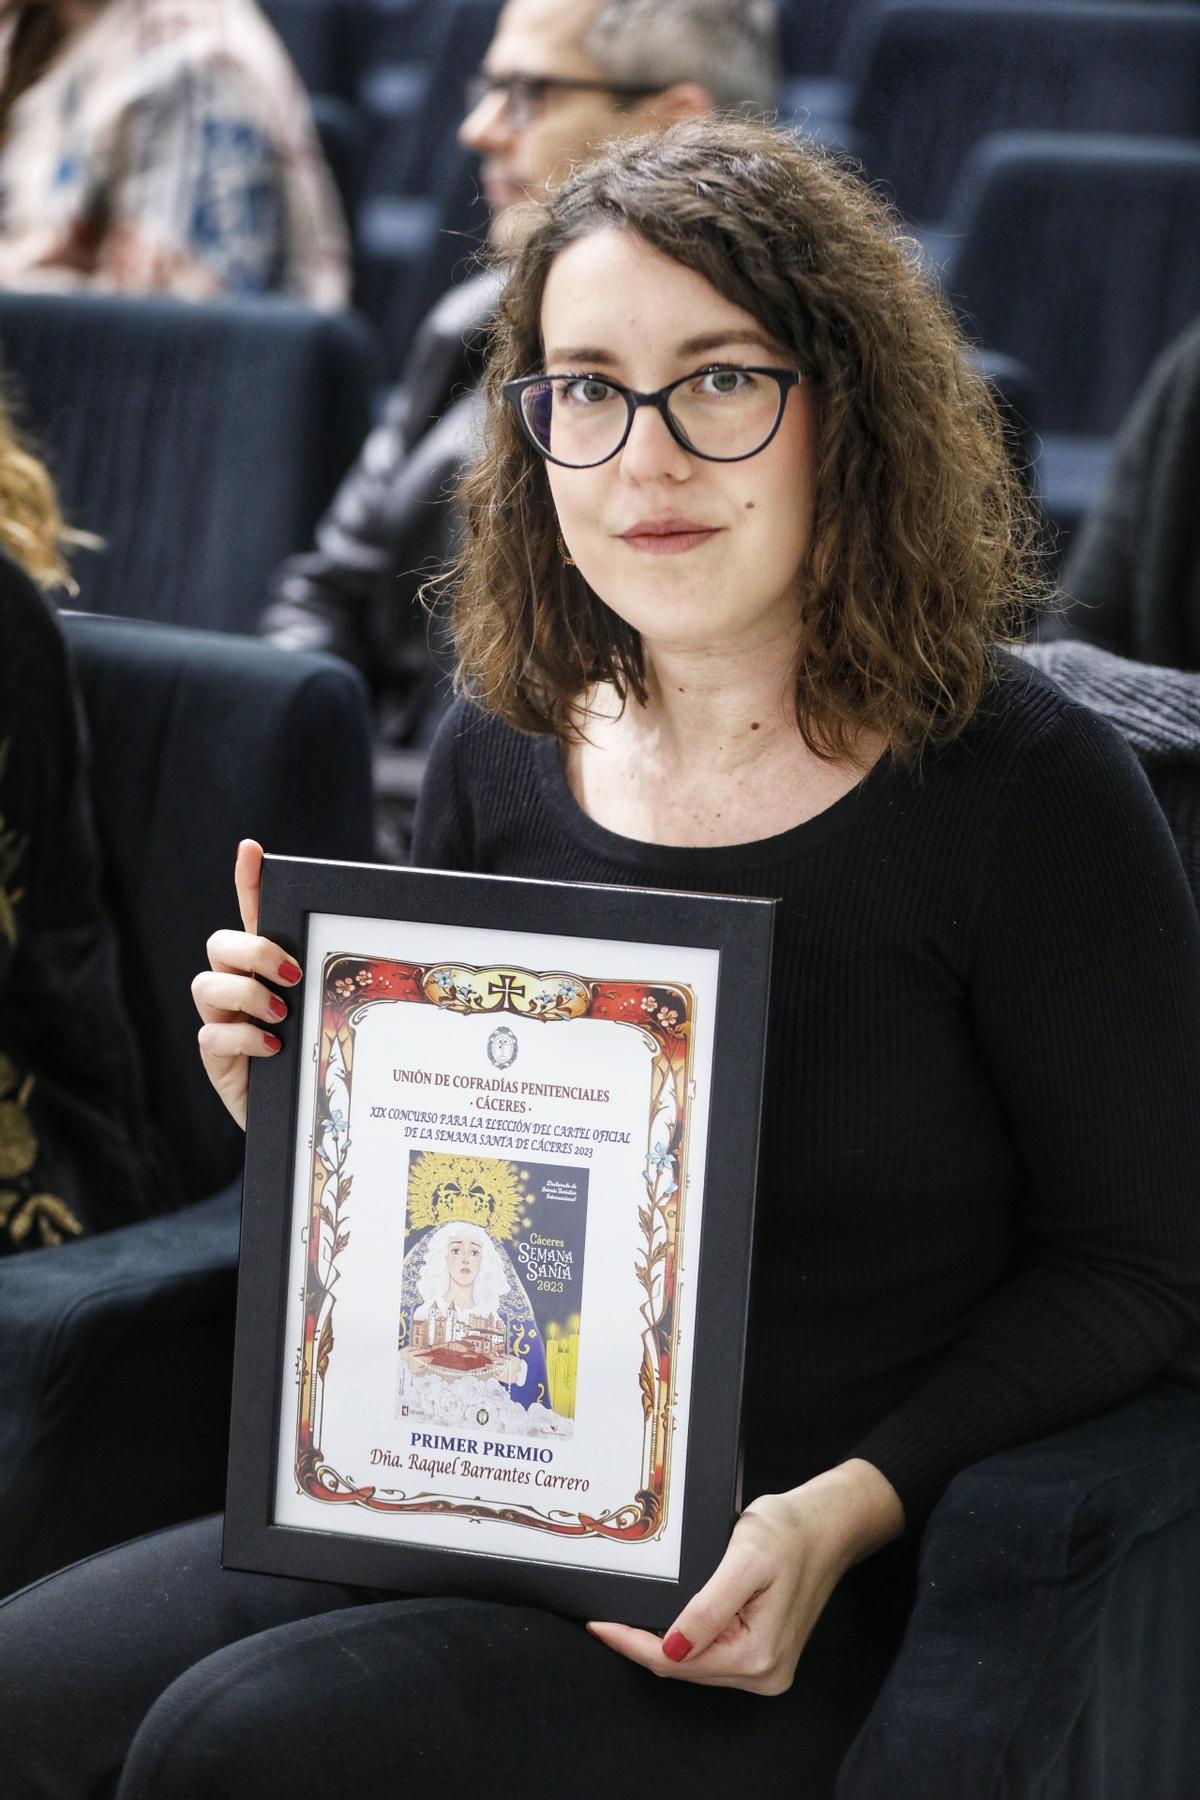 Raquel Carrero, cacereña de 35 años, autora del cartel, con el diploma recibido por su primer premio.